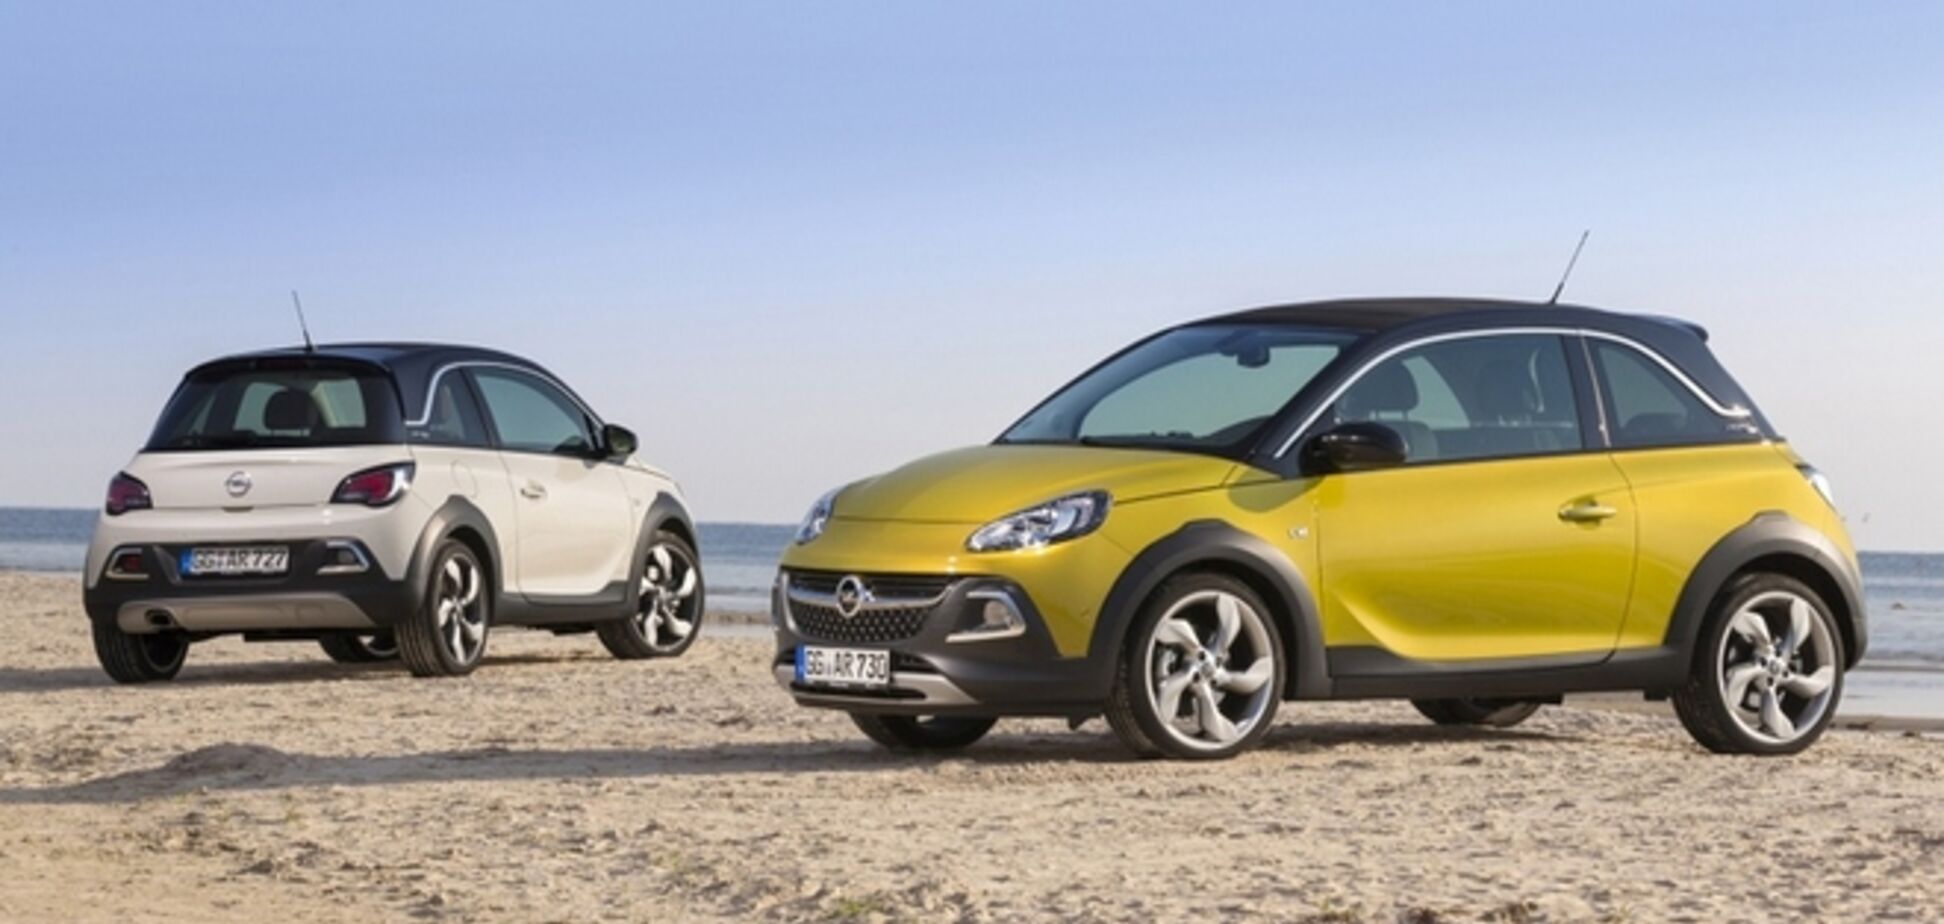 Opel отказался продавать в России свои новые модели авто